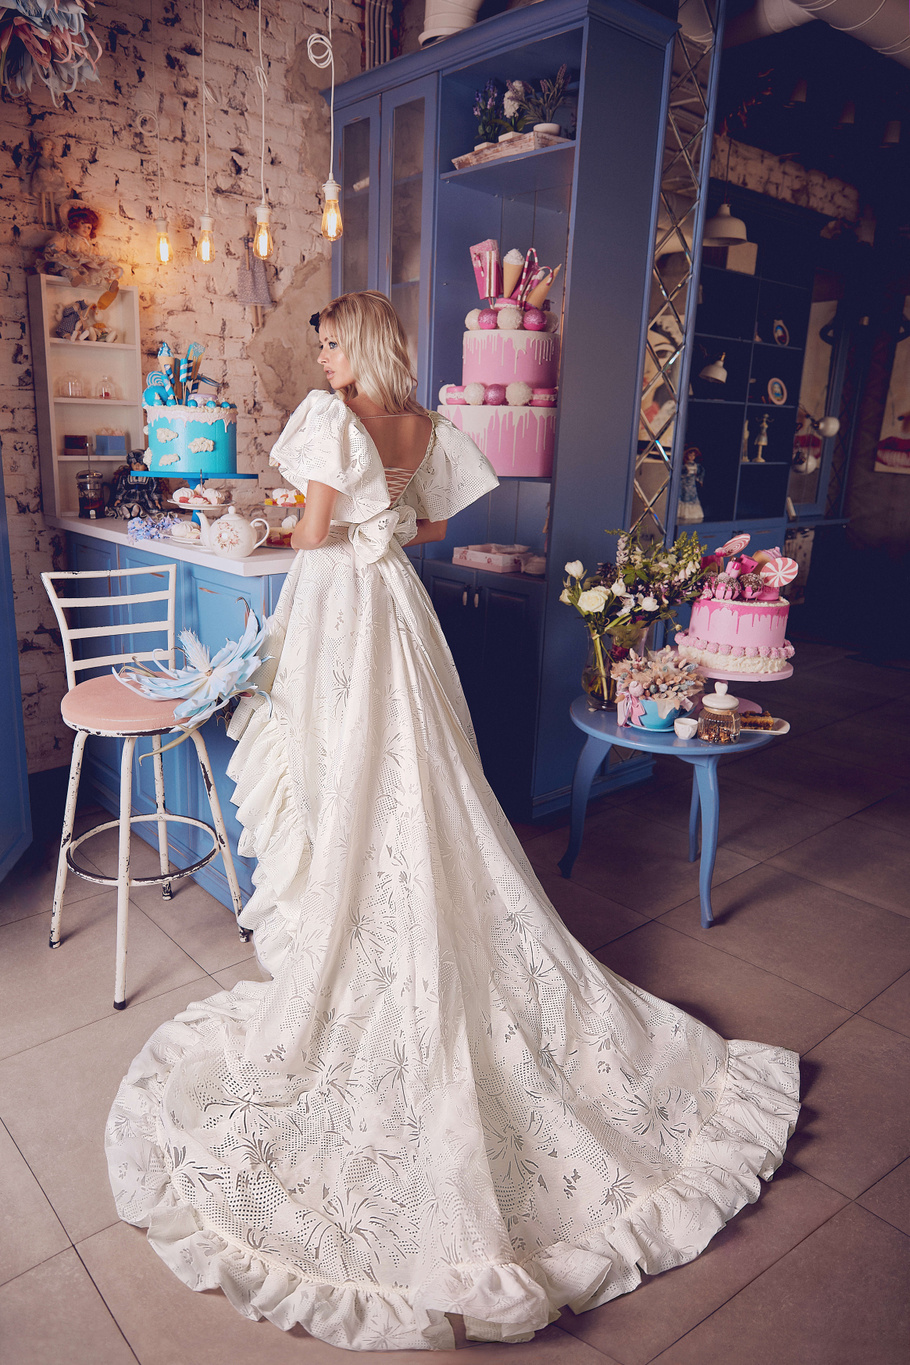 Купить свадебное платье «Дриада» Бламмо Биамо из коллекции Свит Лайф 2021 года в Санкт-Петербурге